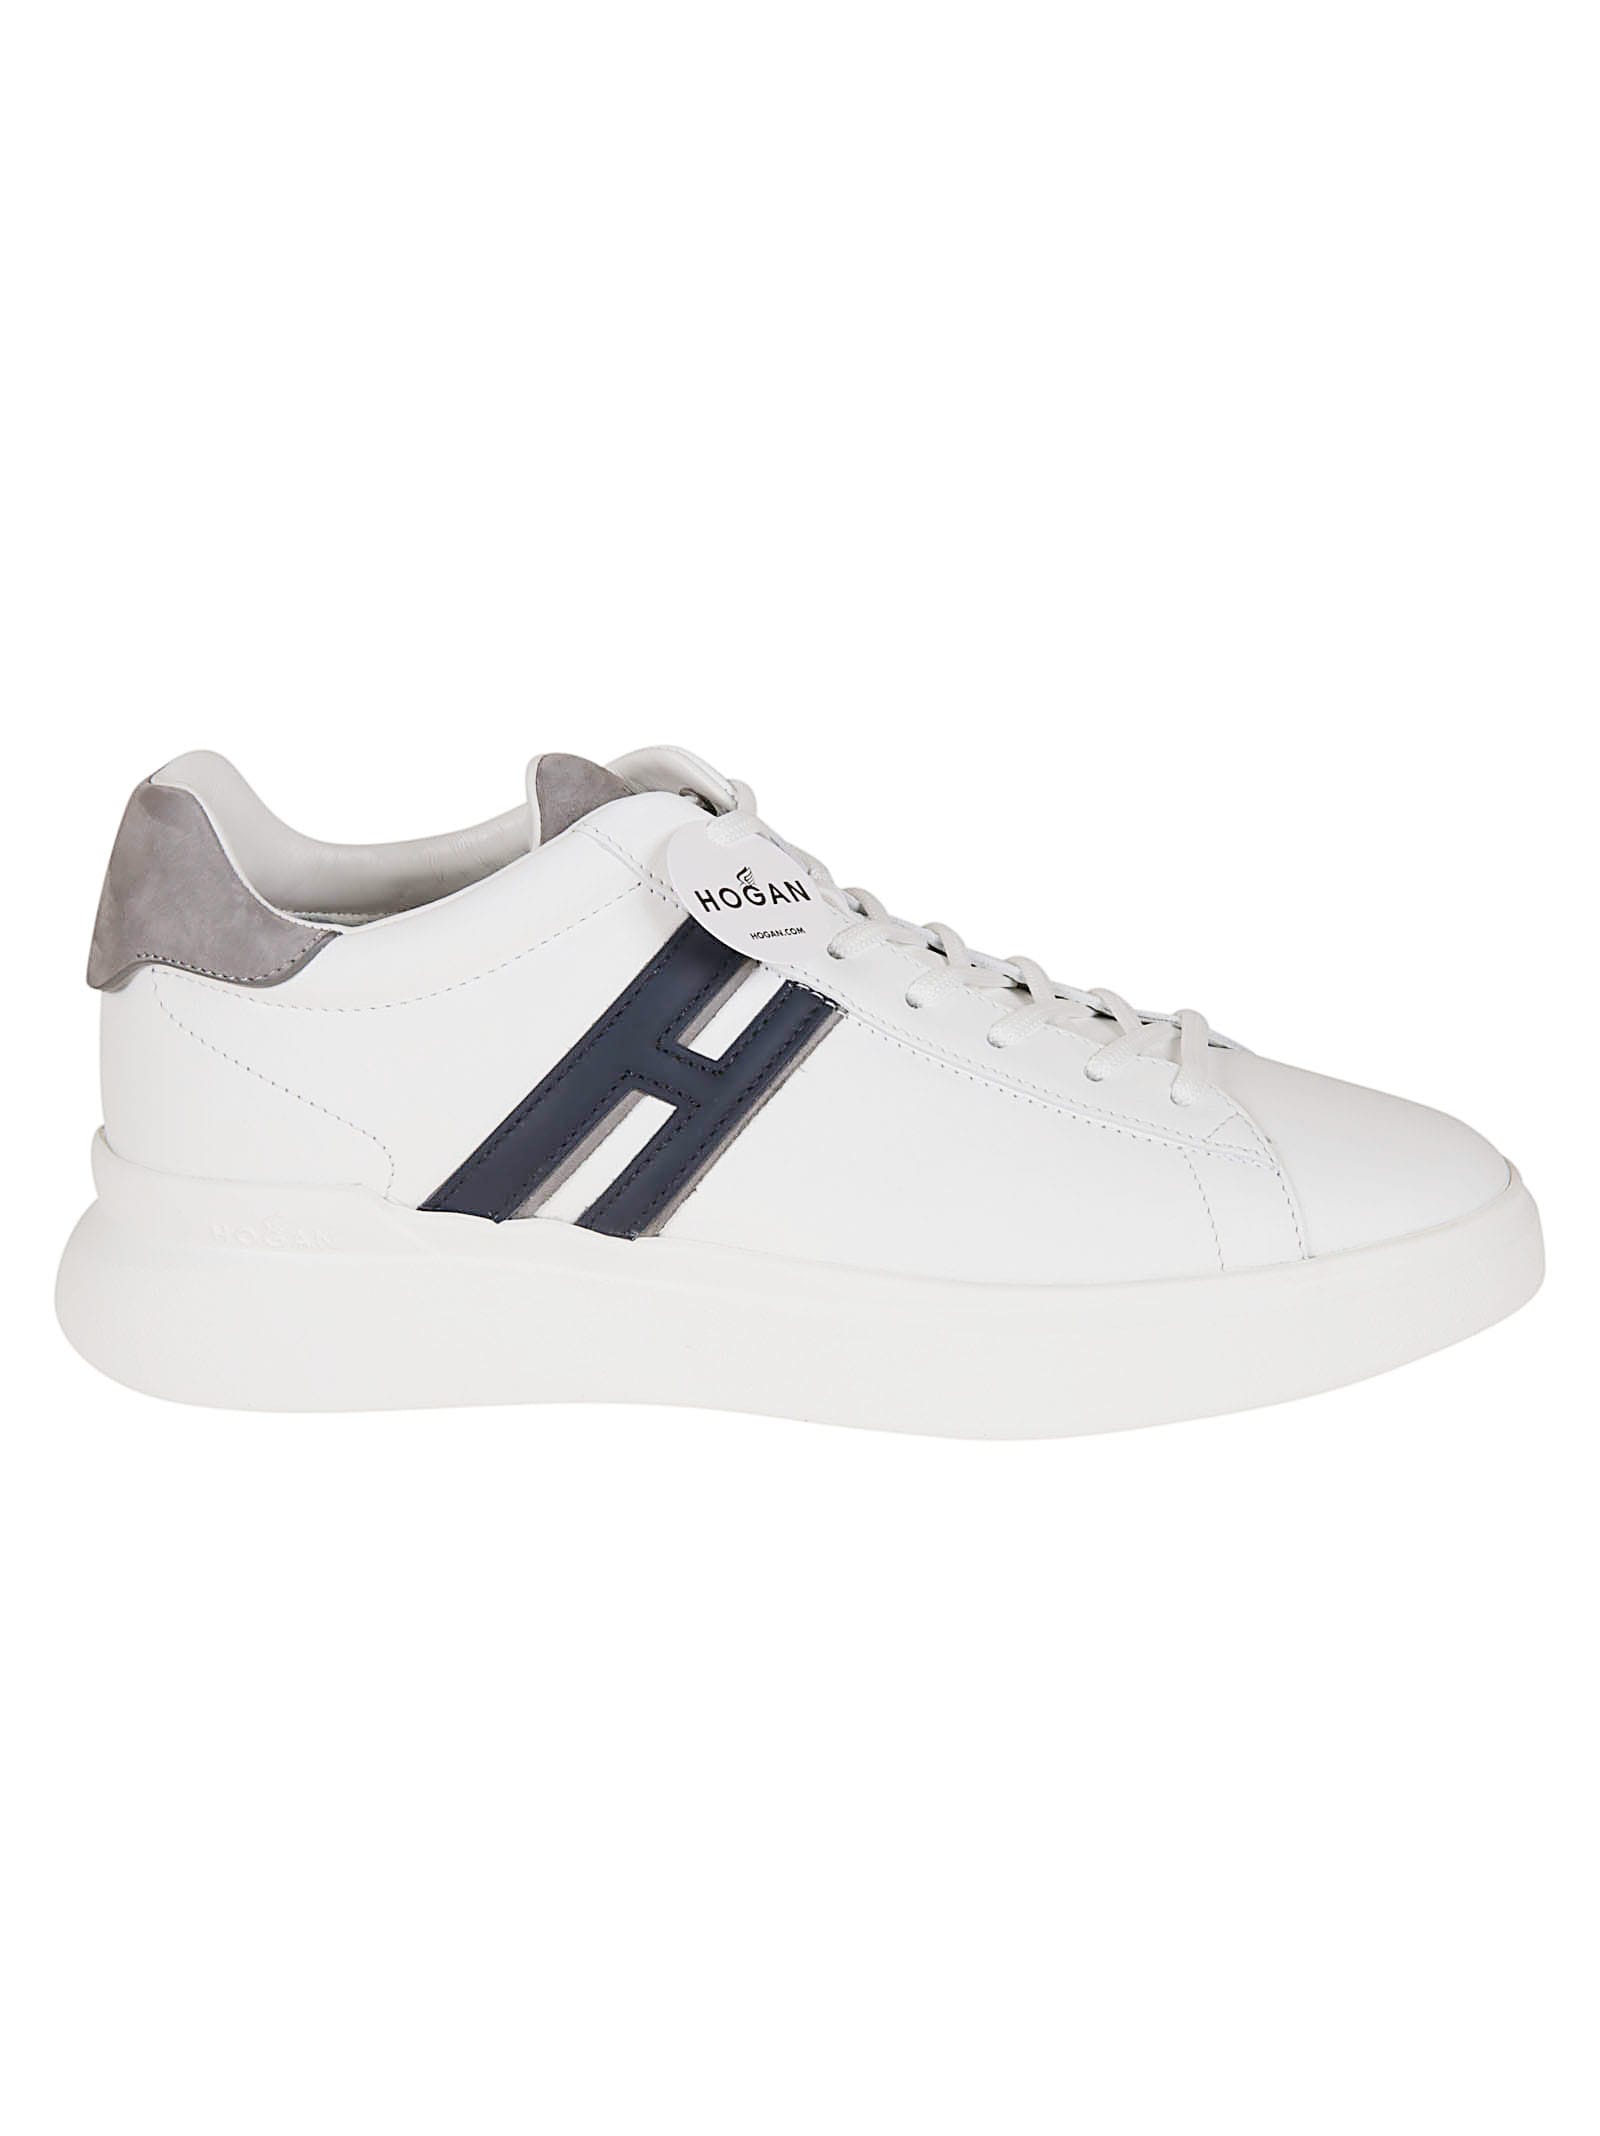 Hogan H583 Sneakers